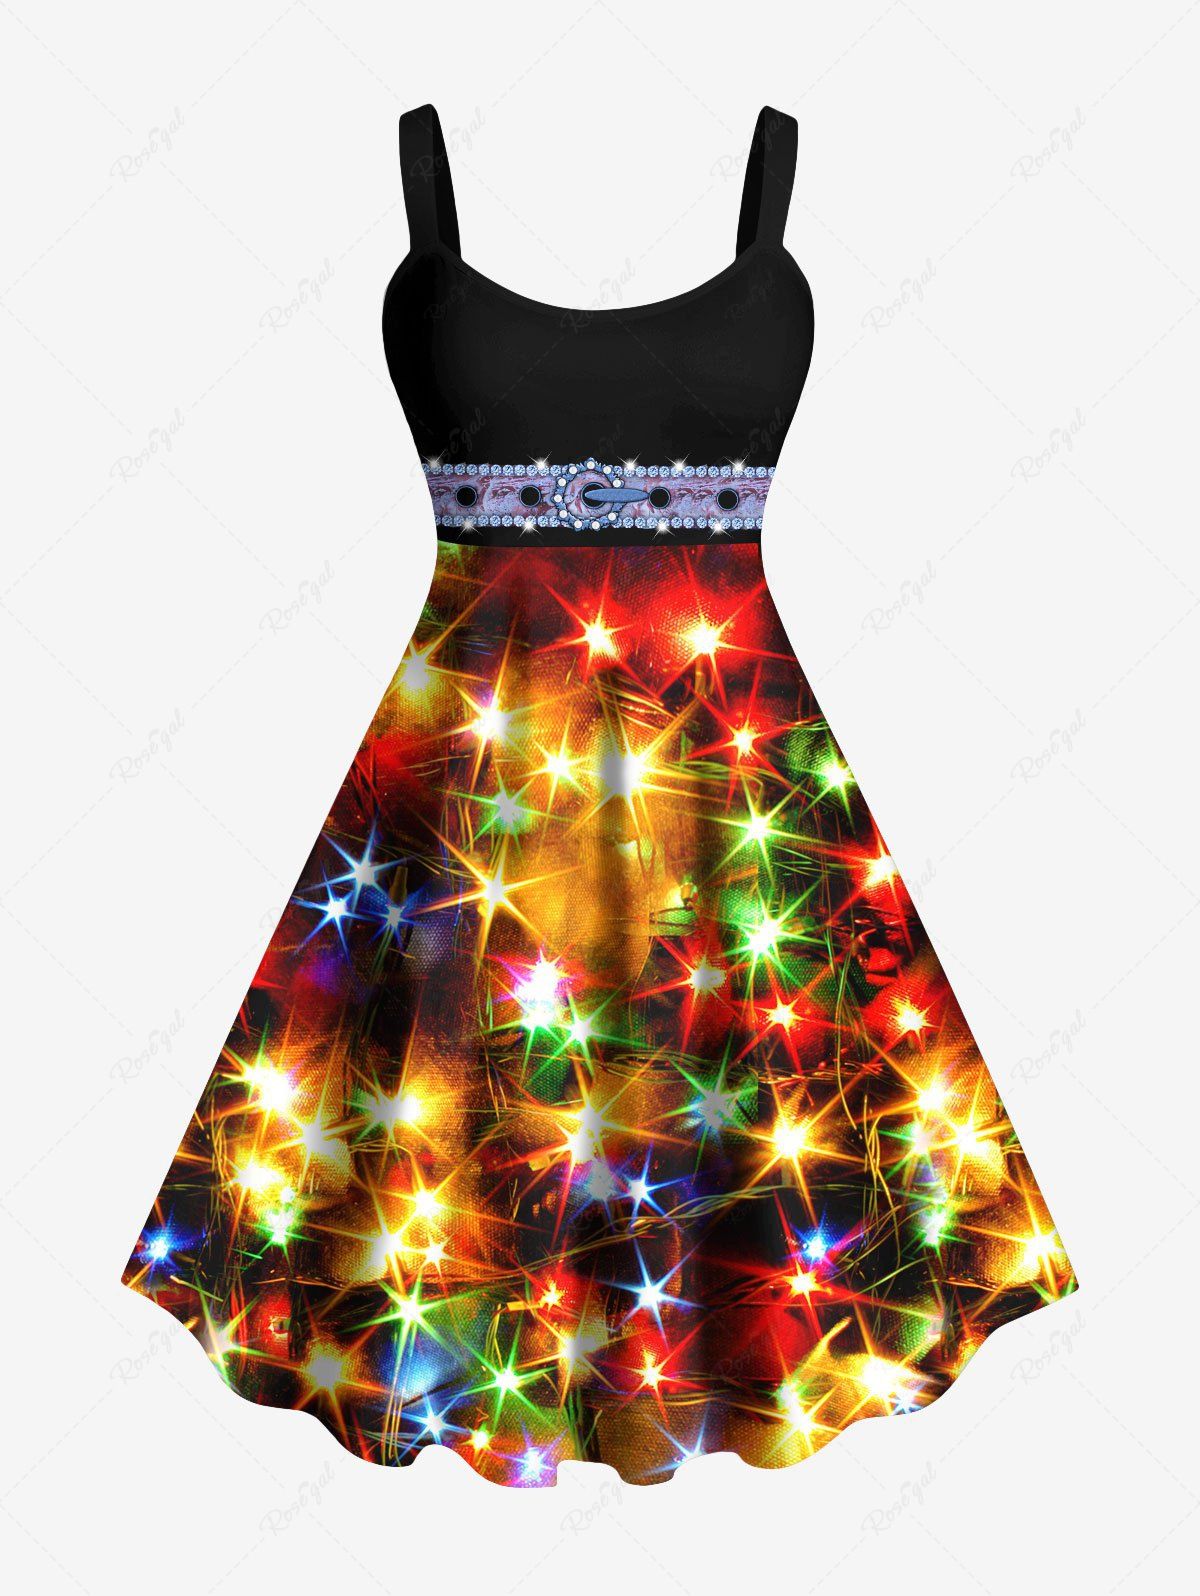 Fashion Plus Size Buckle Belt Grommets Stars Glitter Sparkling Sequin 3D Print Tank Party Dress  